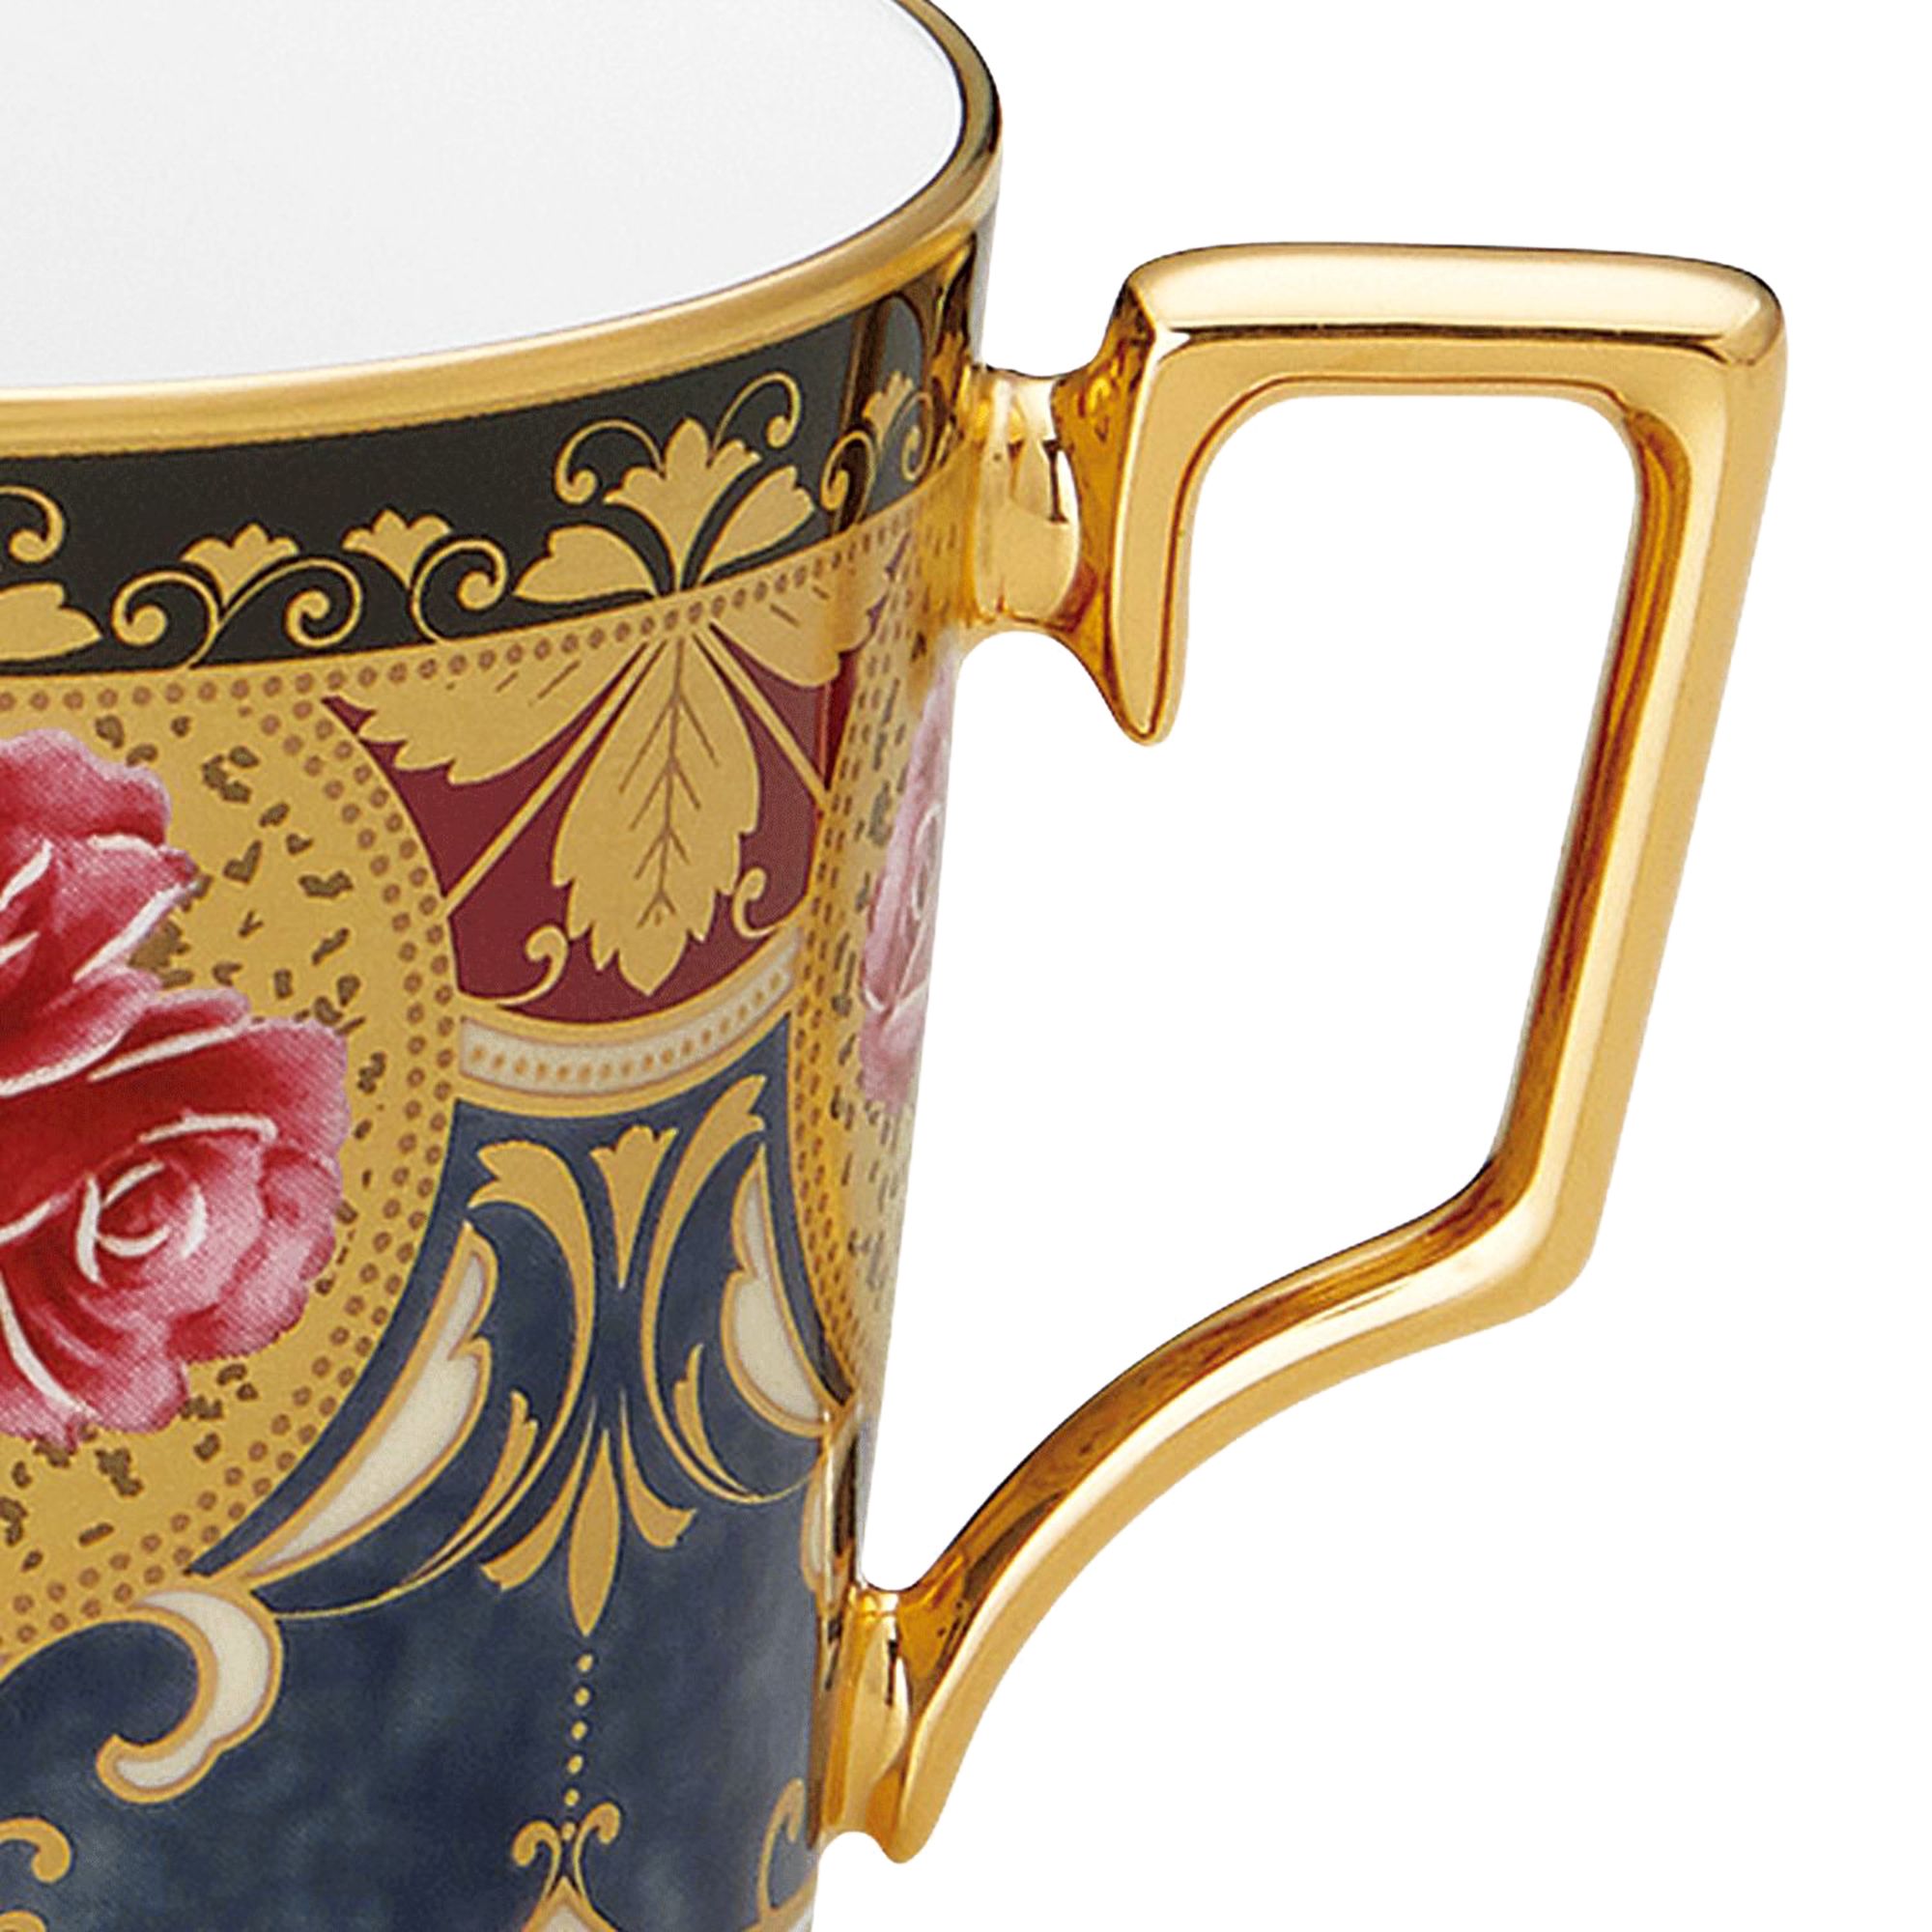  Chén trà (tách trà) kèm đĩa lót dung tích 160ml sứ trắng cao cấp | The Homage Collection H-769J-T2402 